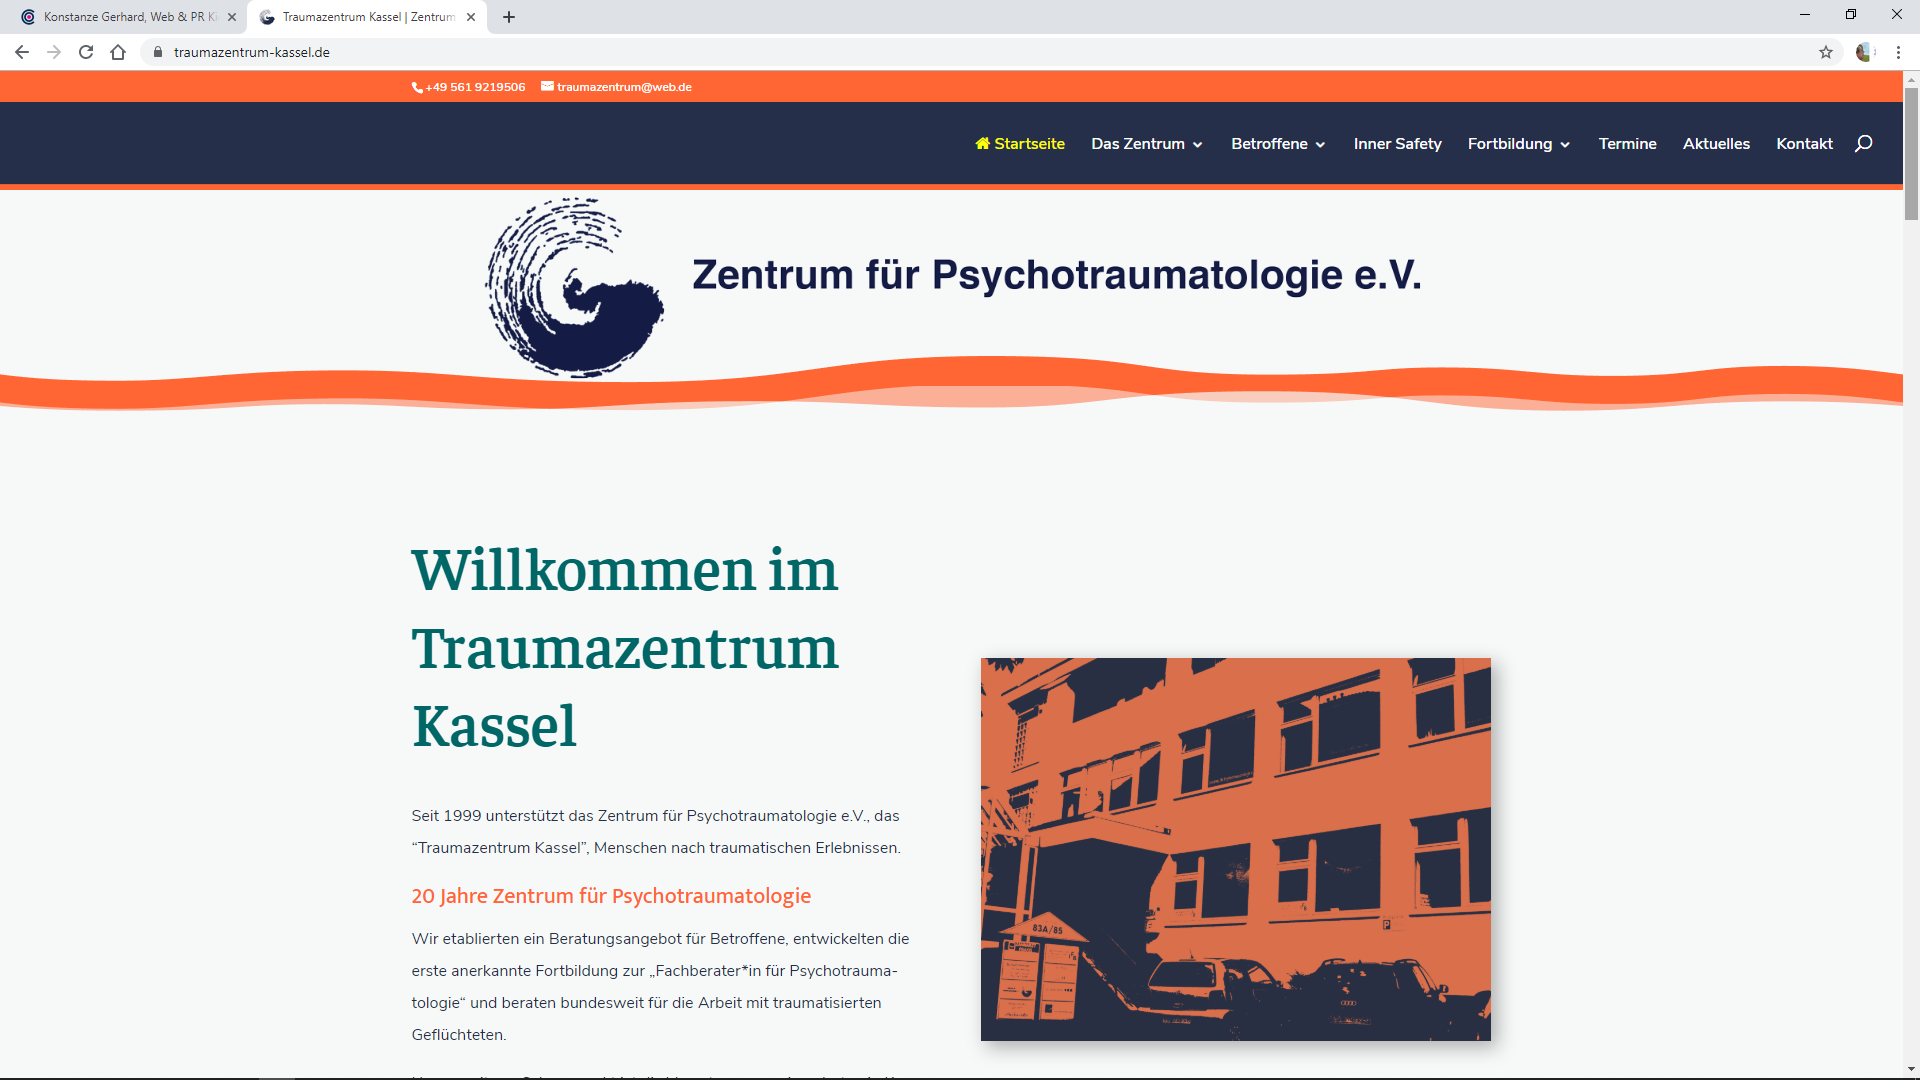 Zentrum für Psychotraumatologie e.V., Traumazentrum Kassel